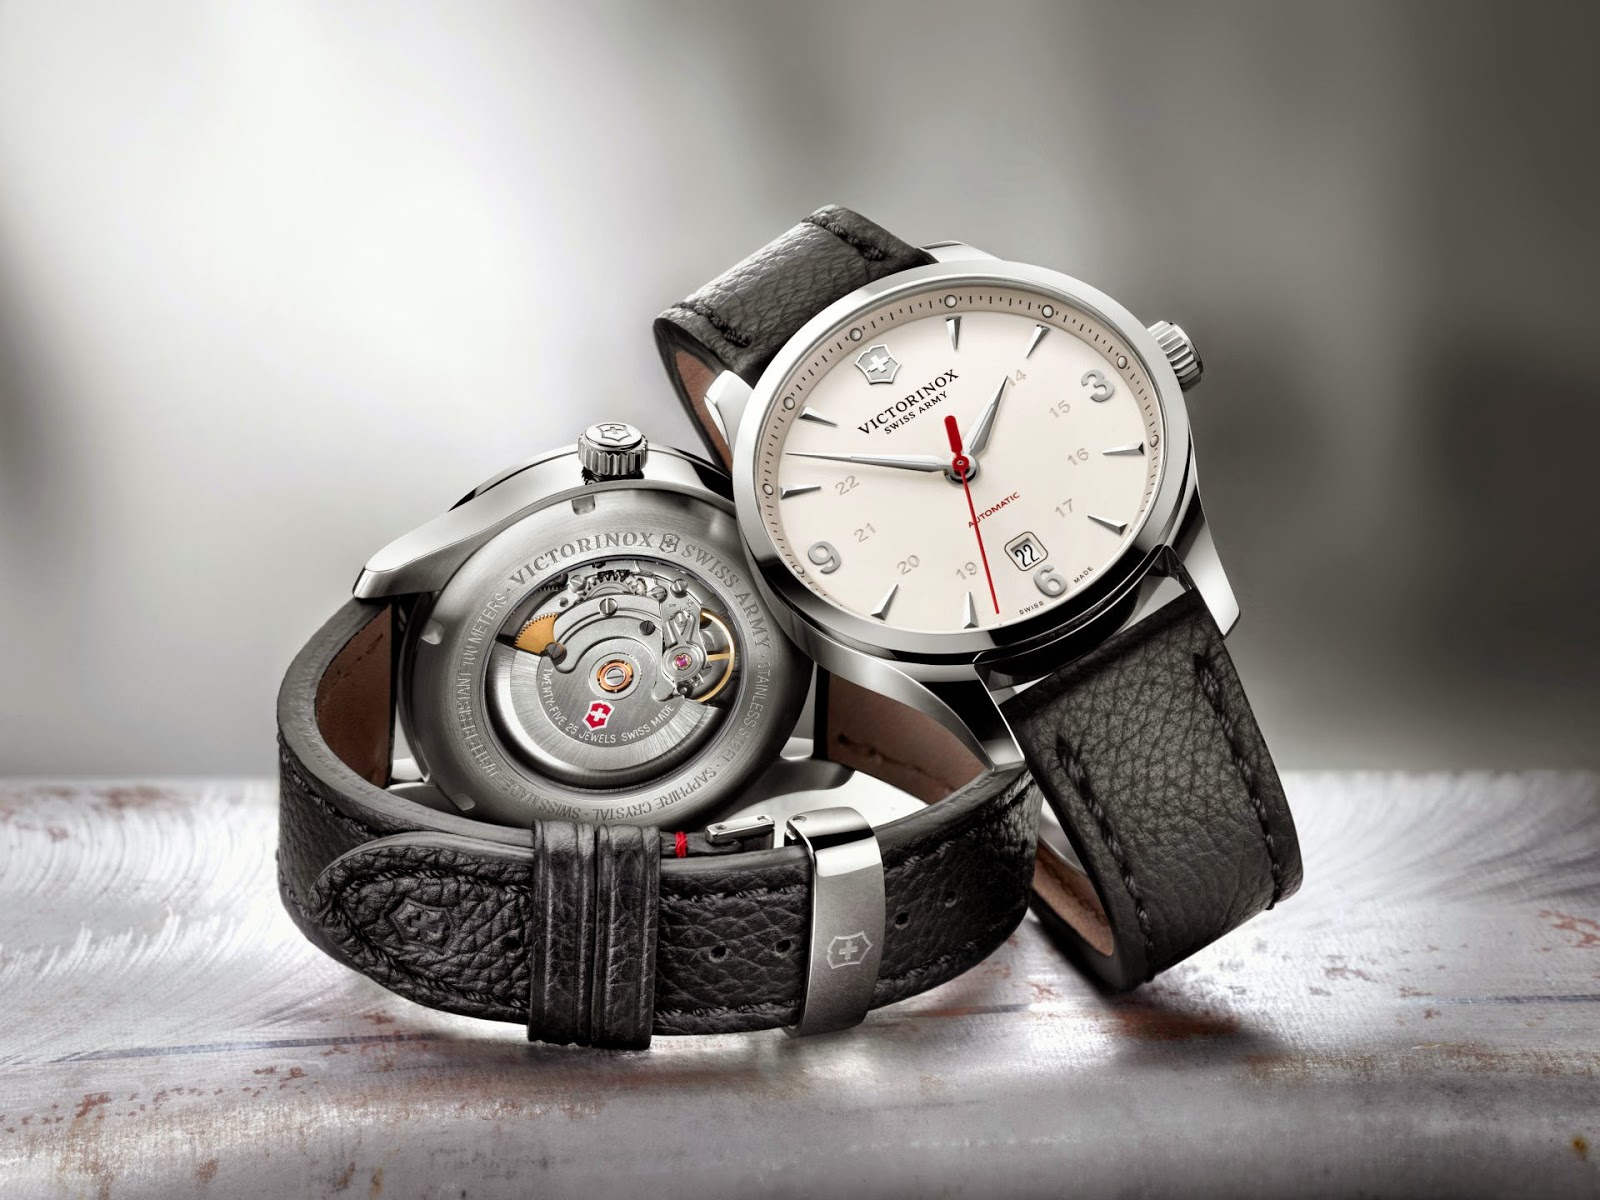 Швейцарские часы качество. Швейцарские часы. Фирменные часы швейцарские. Швейцарские часы 38-40 мм. Доступные швейцарские часы.